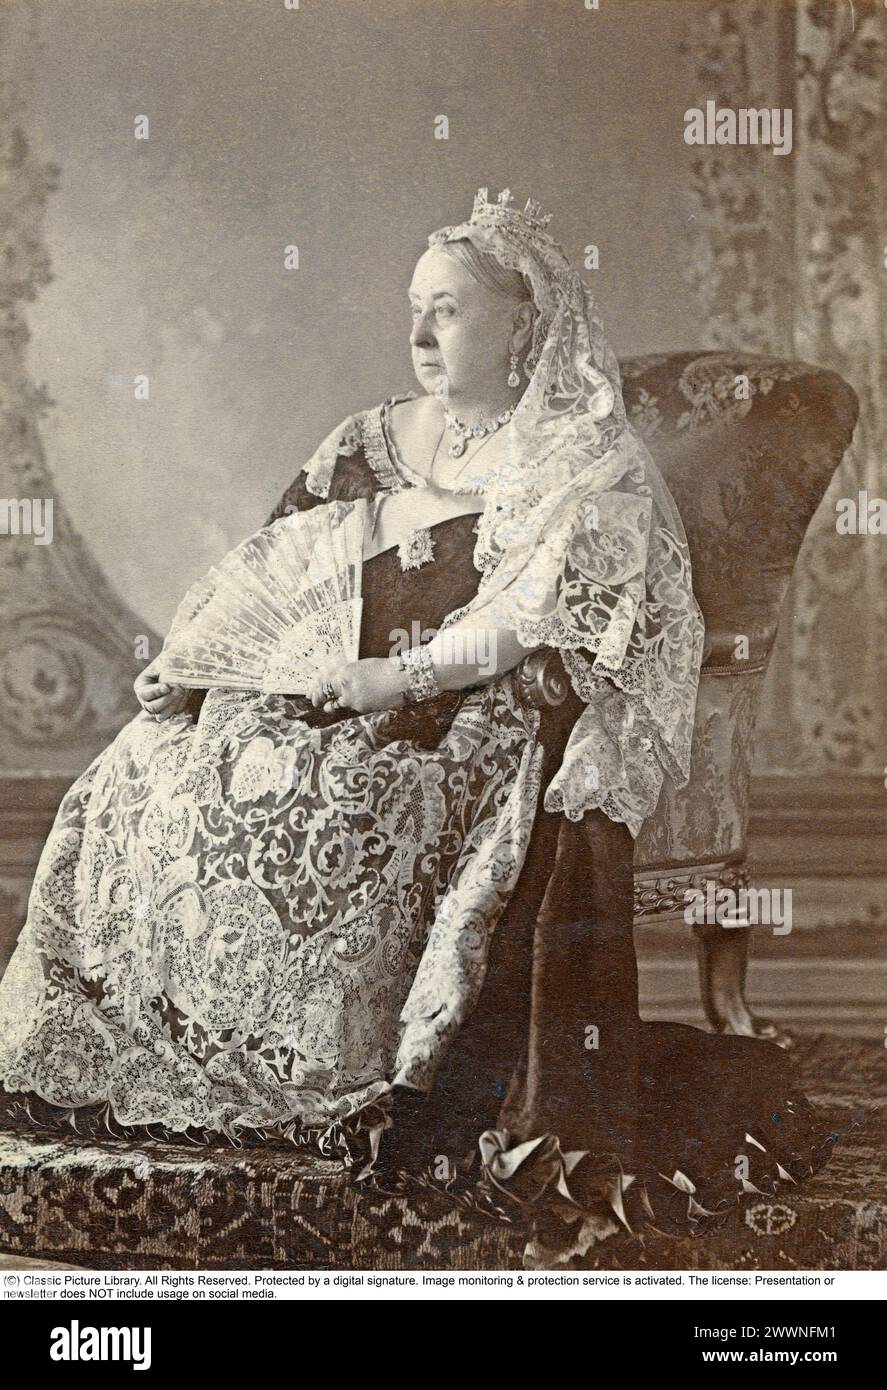 Königin Victoria (Alexandrina Victoria; 24. Mai 1819 – 22. Januar 1901) war vom 20. Juni 1837 bis zu ihrem Tod 1901 Königin des Vereinigten Königreichs Großbritannien und Irland. Ihre Herrschaft von 63 Jahren und 216 Tagen, die länger war als die ihrer Vorgänger, wird als viktorianische Ära bezeichnet. Foto aufgenommen 1893. Stockfoto